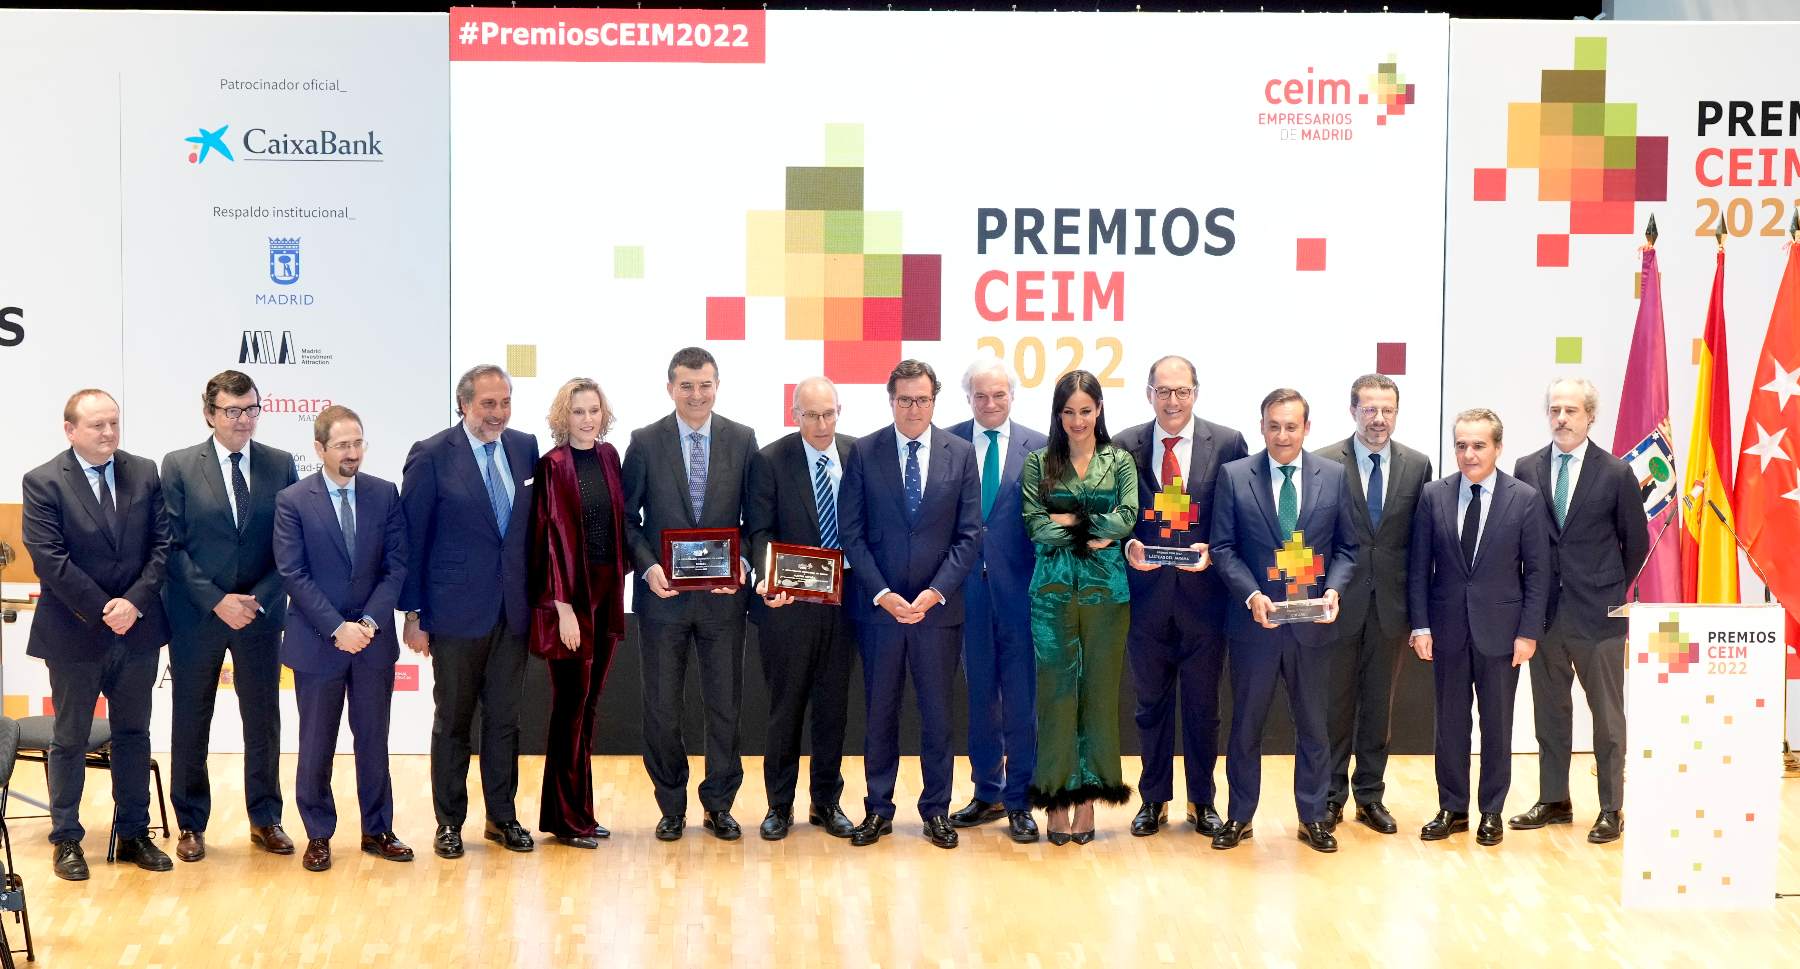 Foto de familia de los Premios Ceim 2022